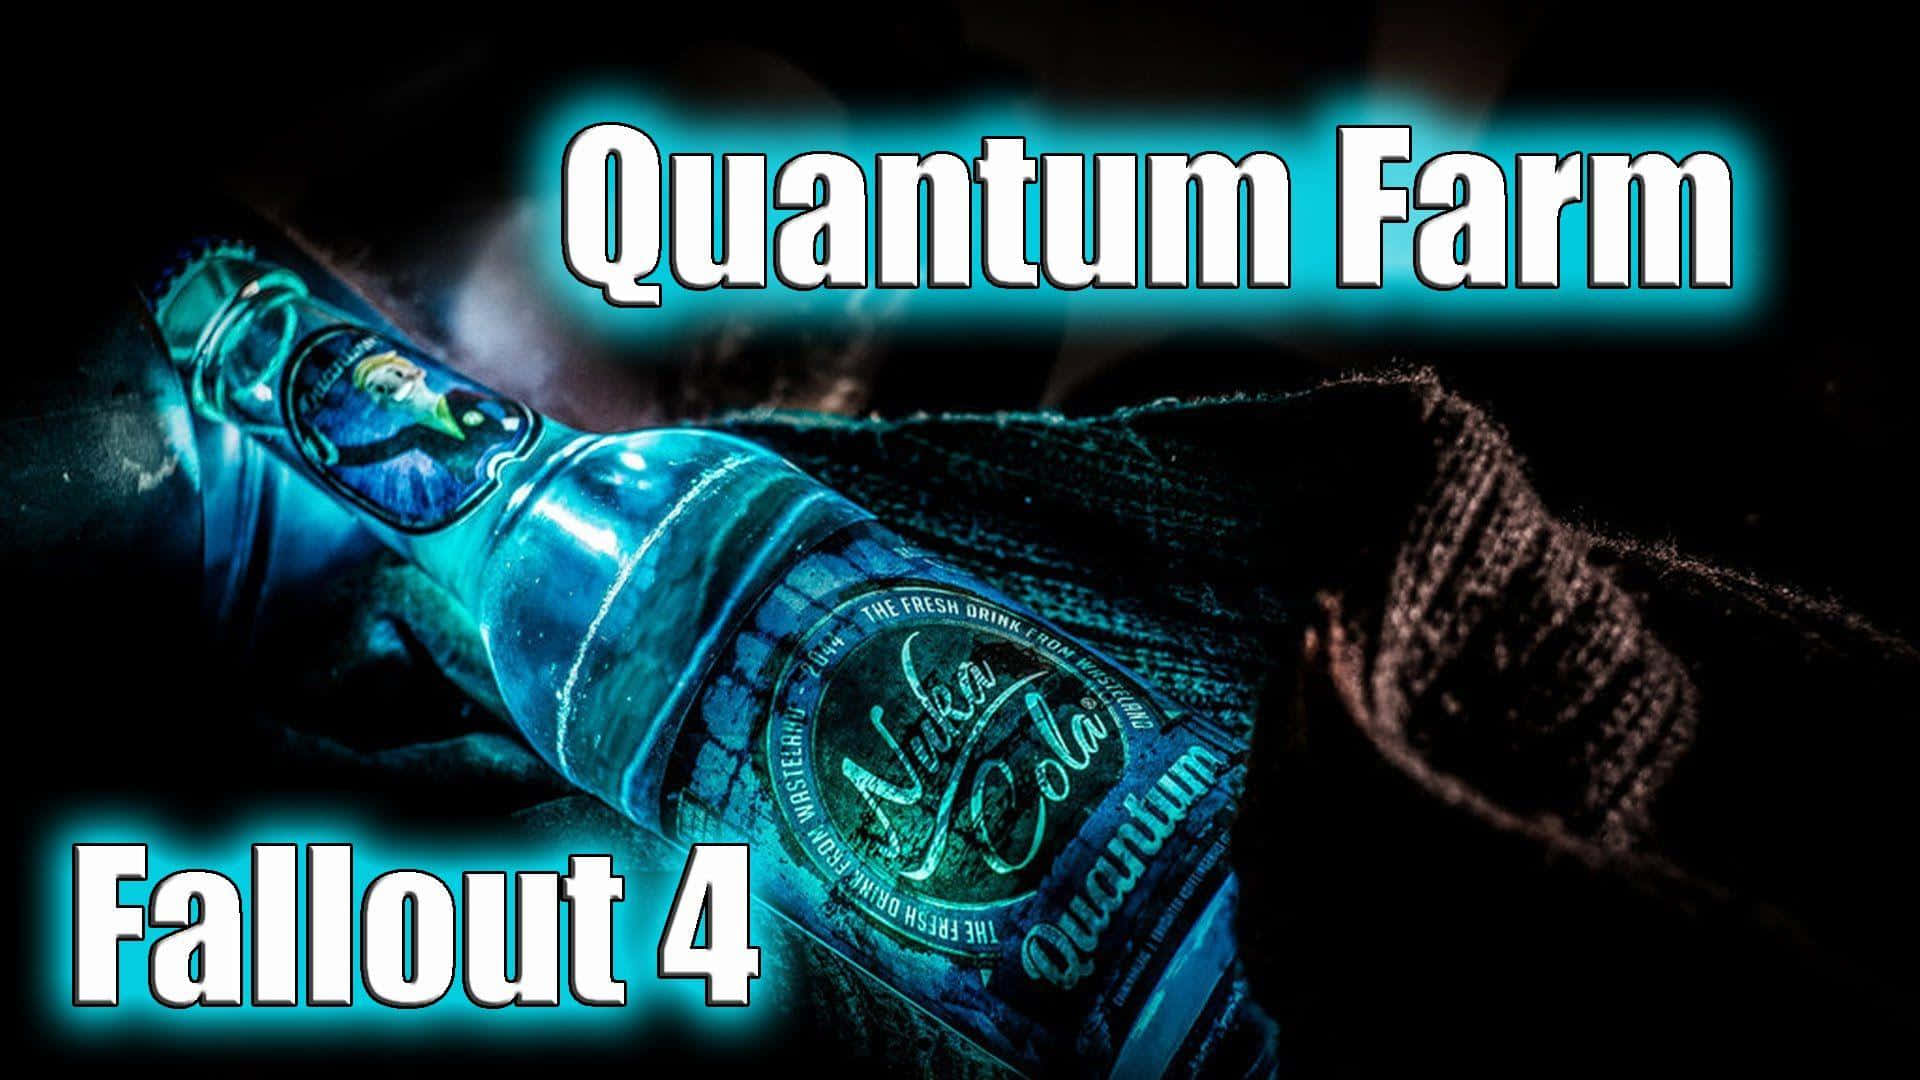 Quantum Farm Fallout 4 Wallpaper